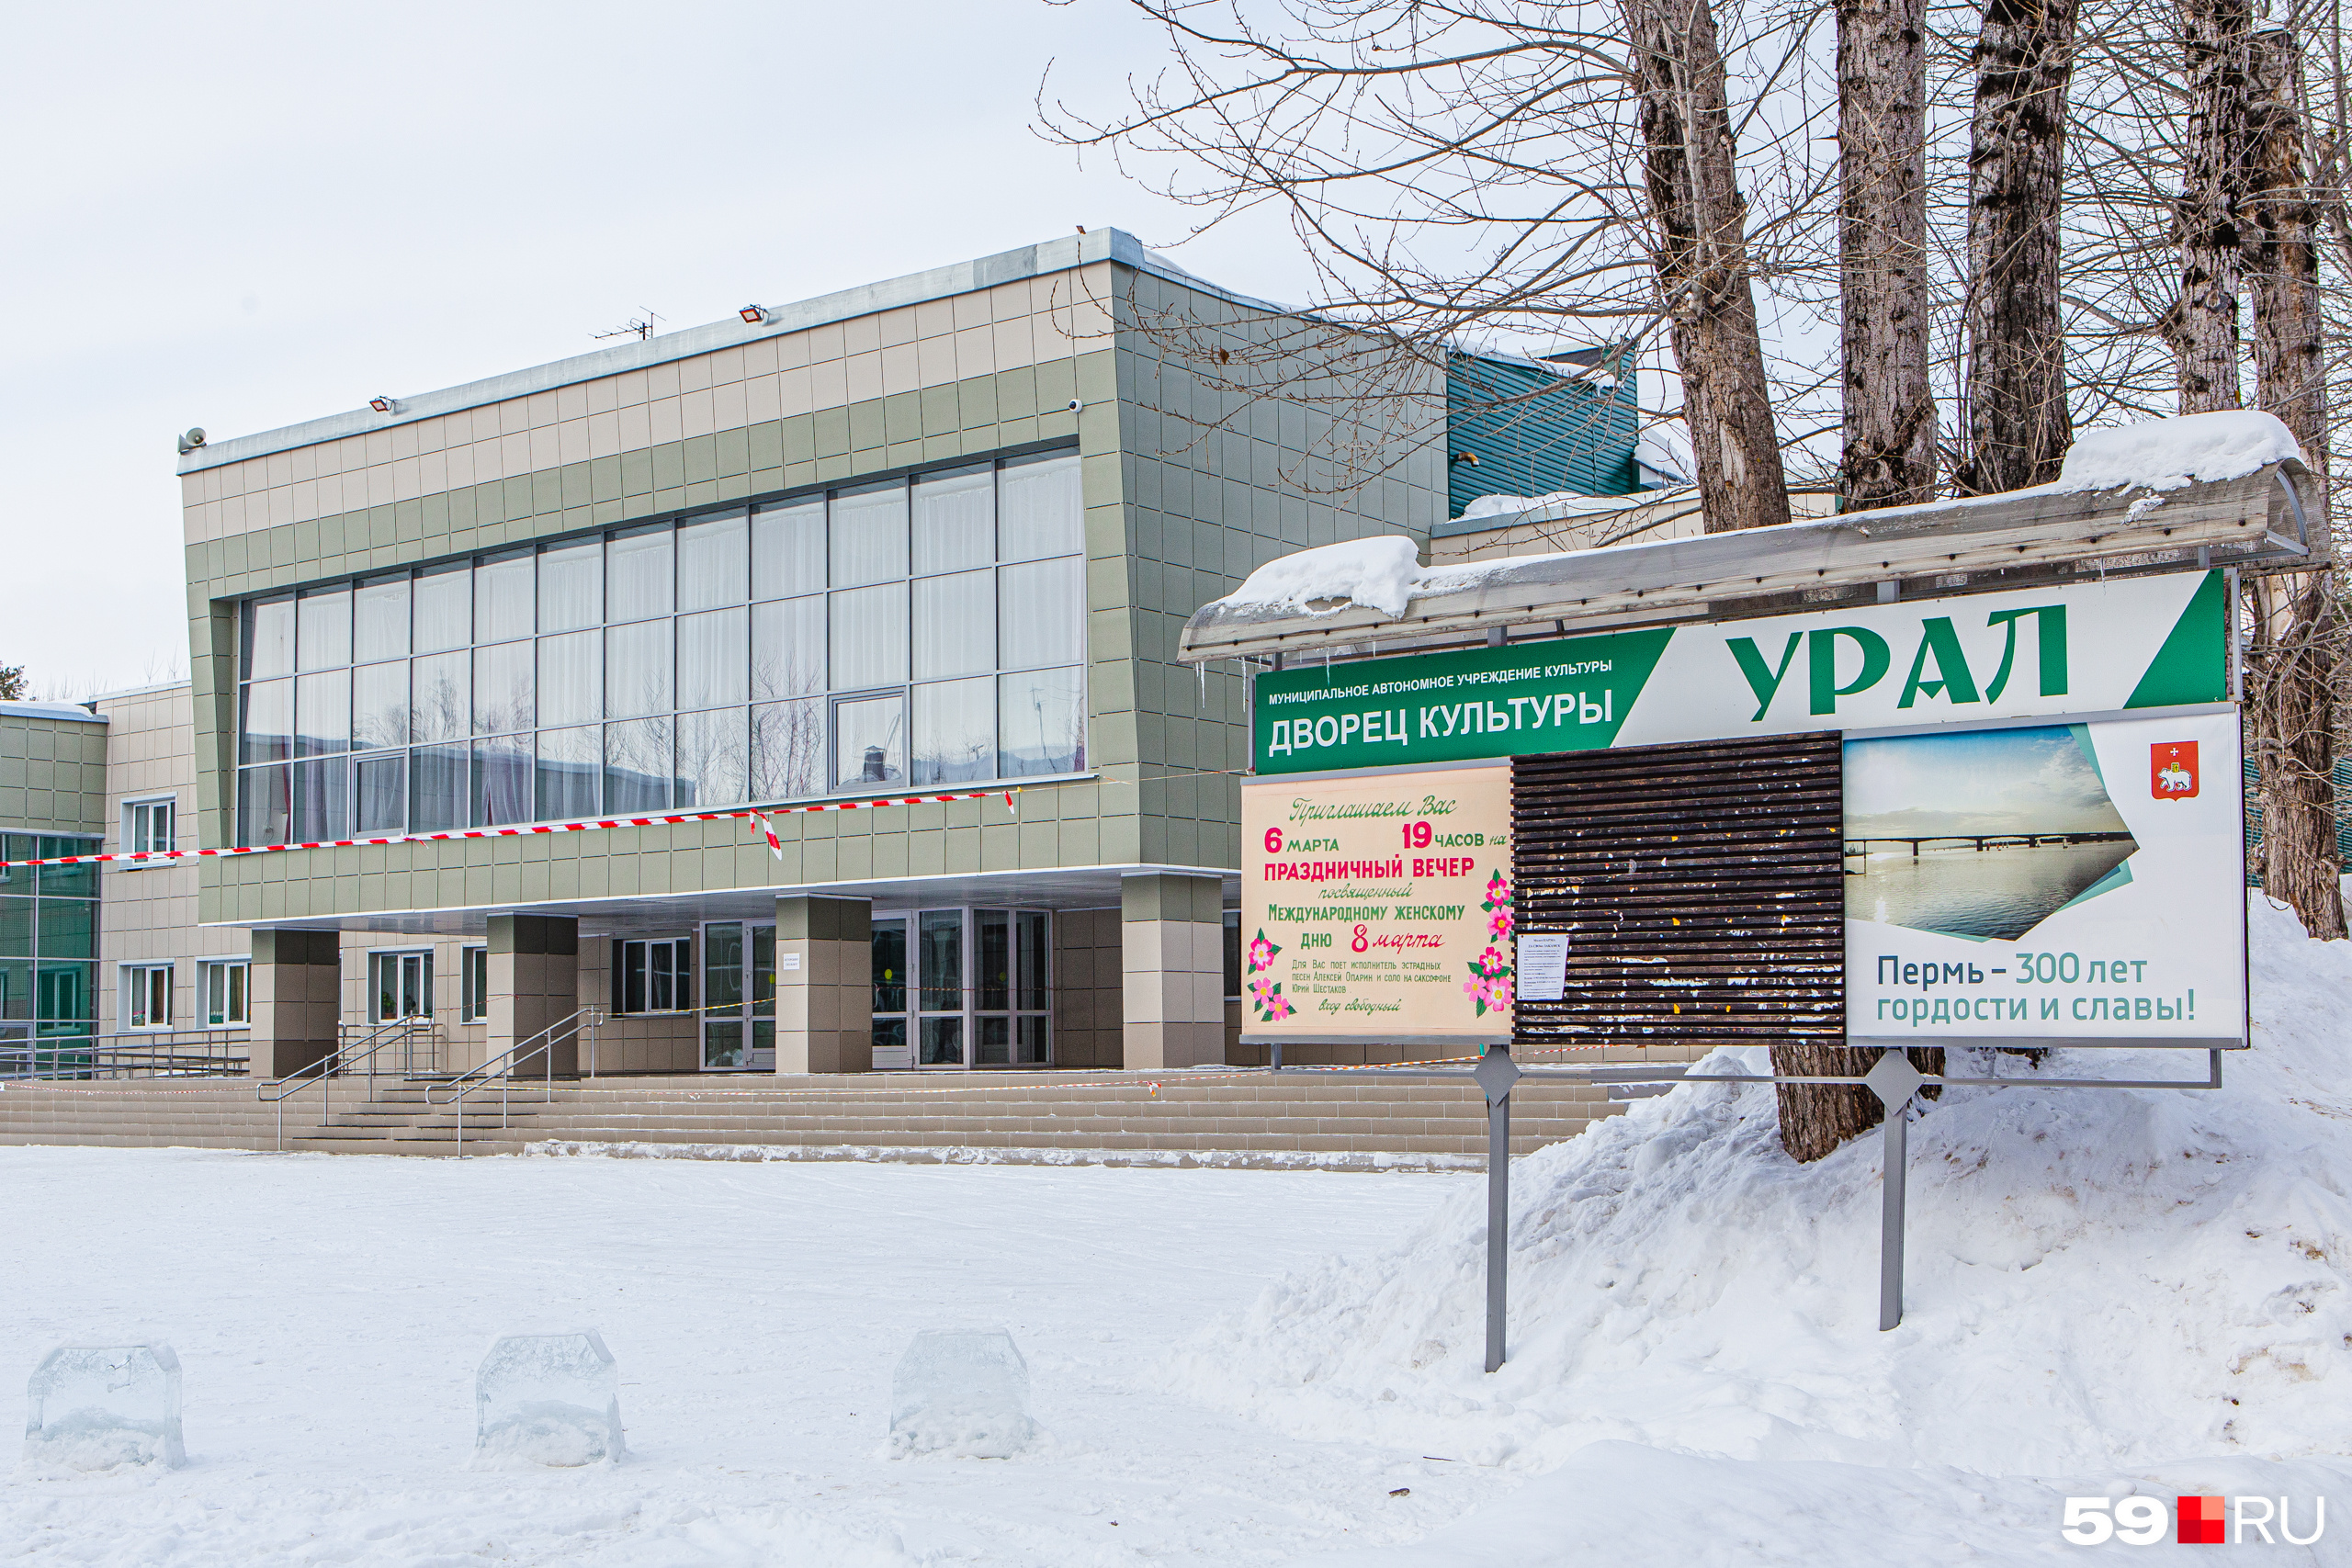 Микрорайон находится далеко от центра Перми, поэтому местные жители чаще ходят на мероприятия в ДК «Урал». Здесь же работают кружки и секции